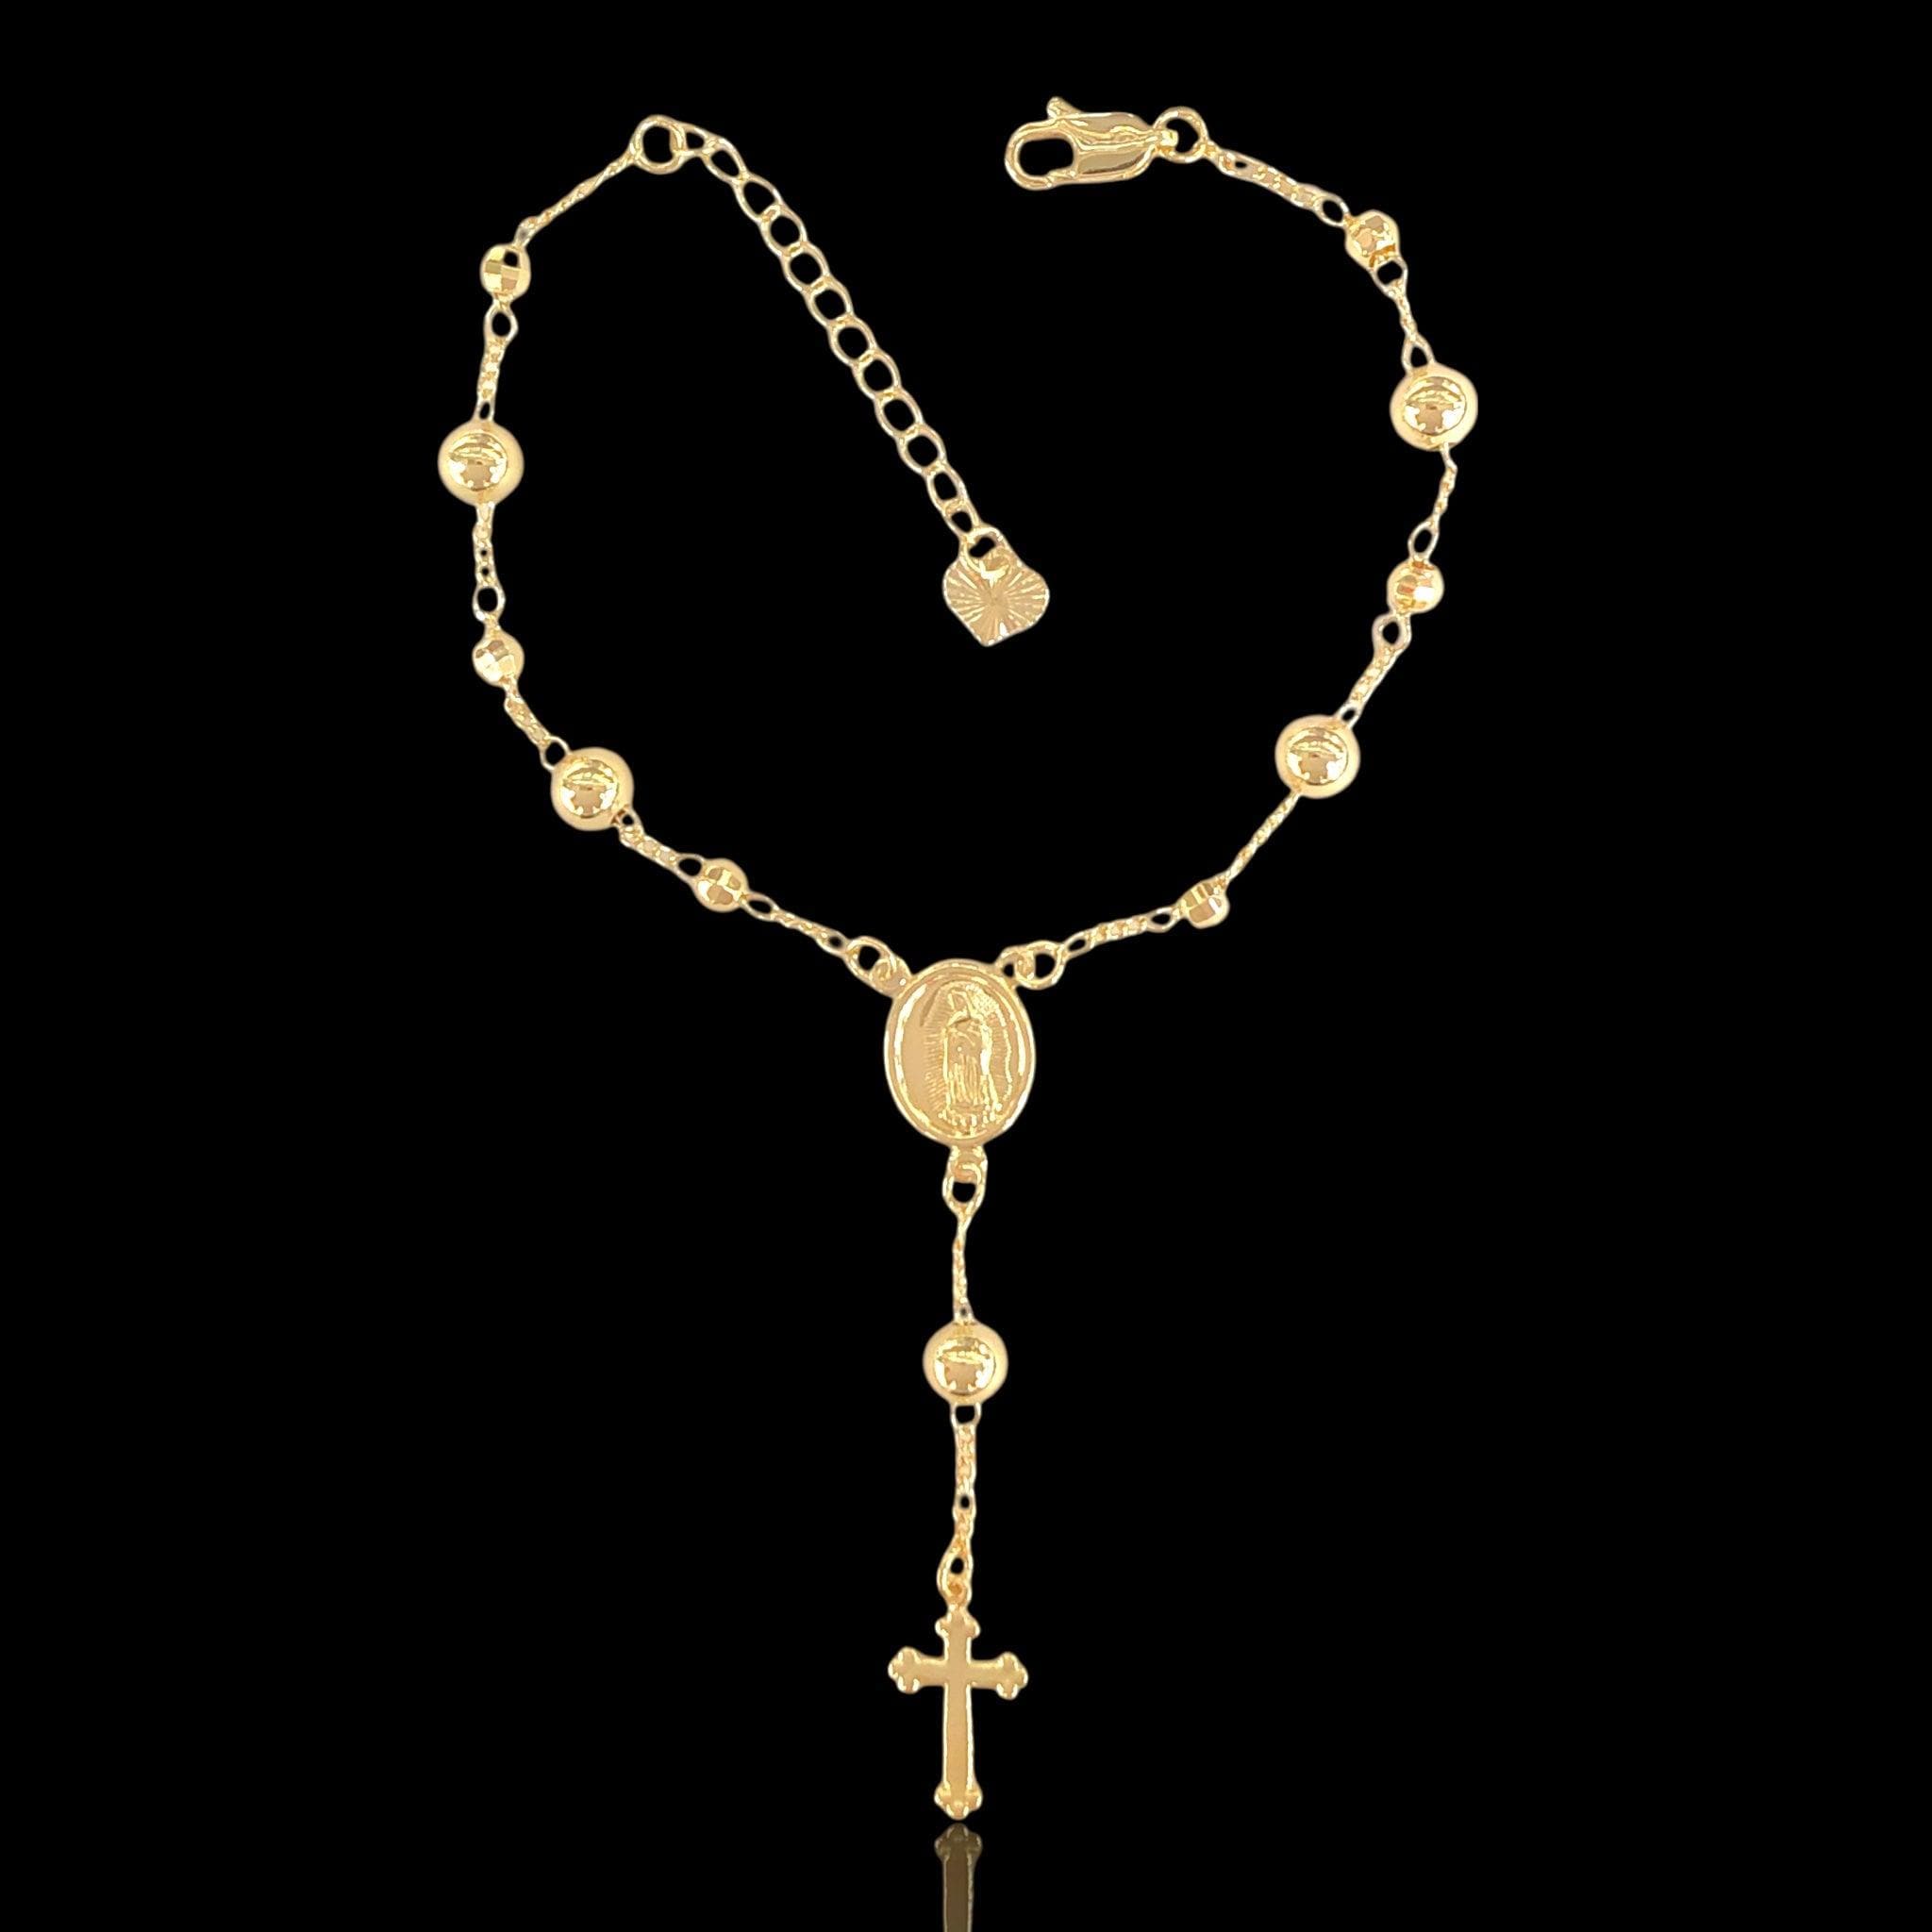 18k Gold-filled Rosary Bracelet- kuania oro laminado